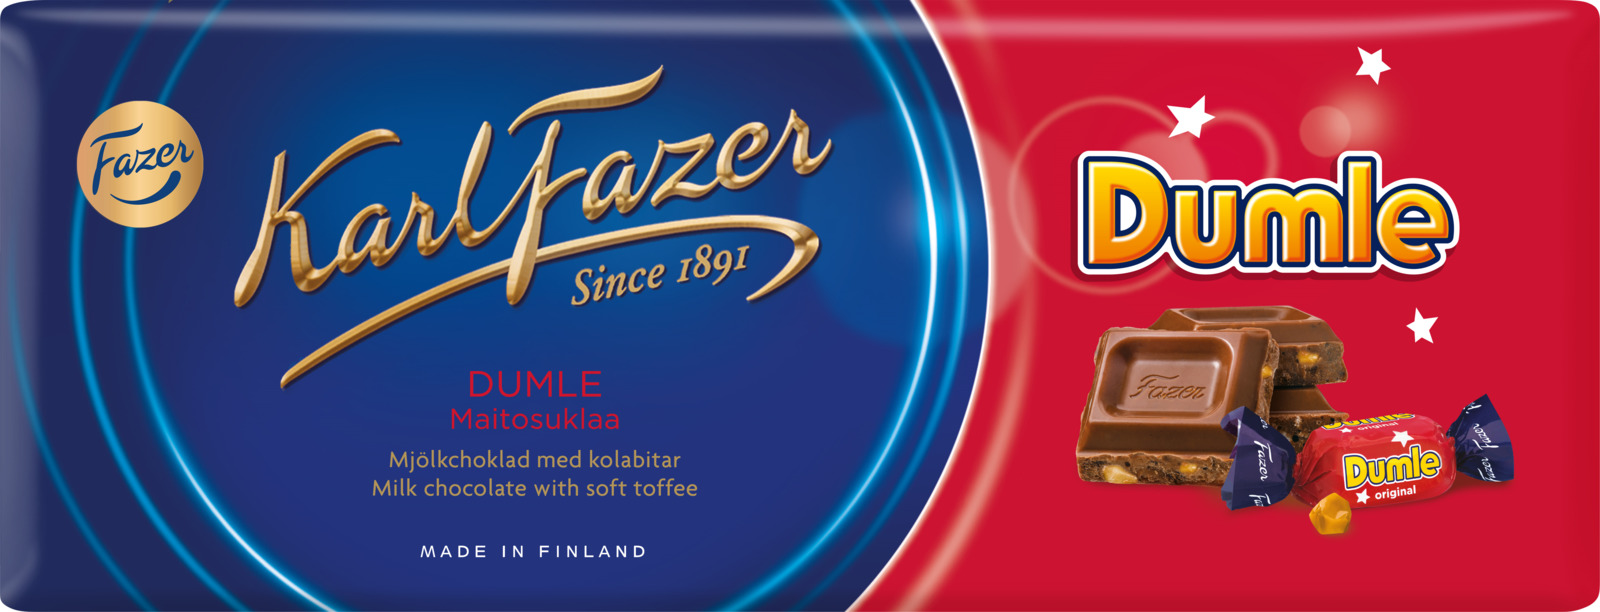 Шоколад молочный Karl Fazer, с кусочками ириса Dumle, 200 г